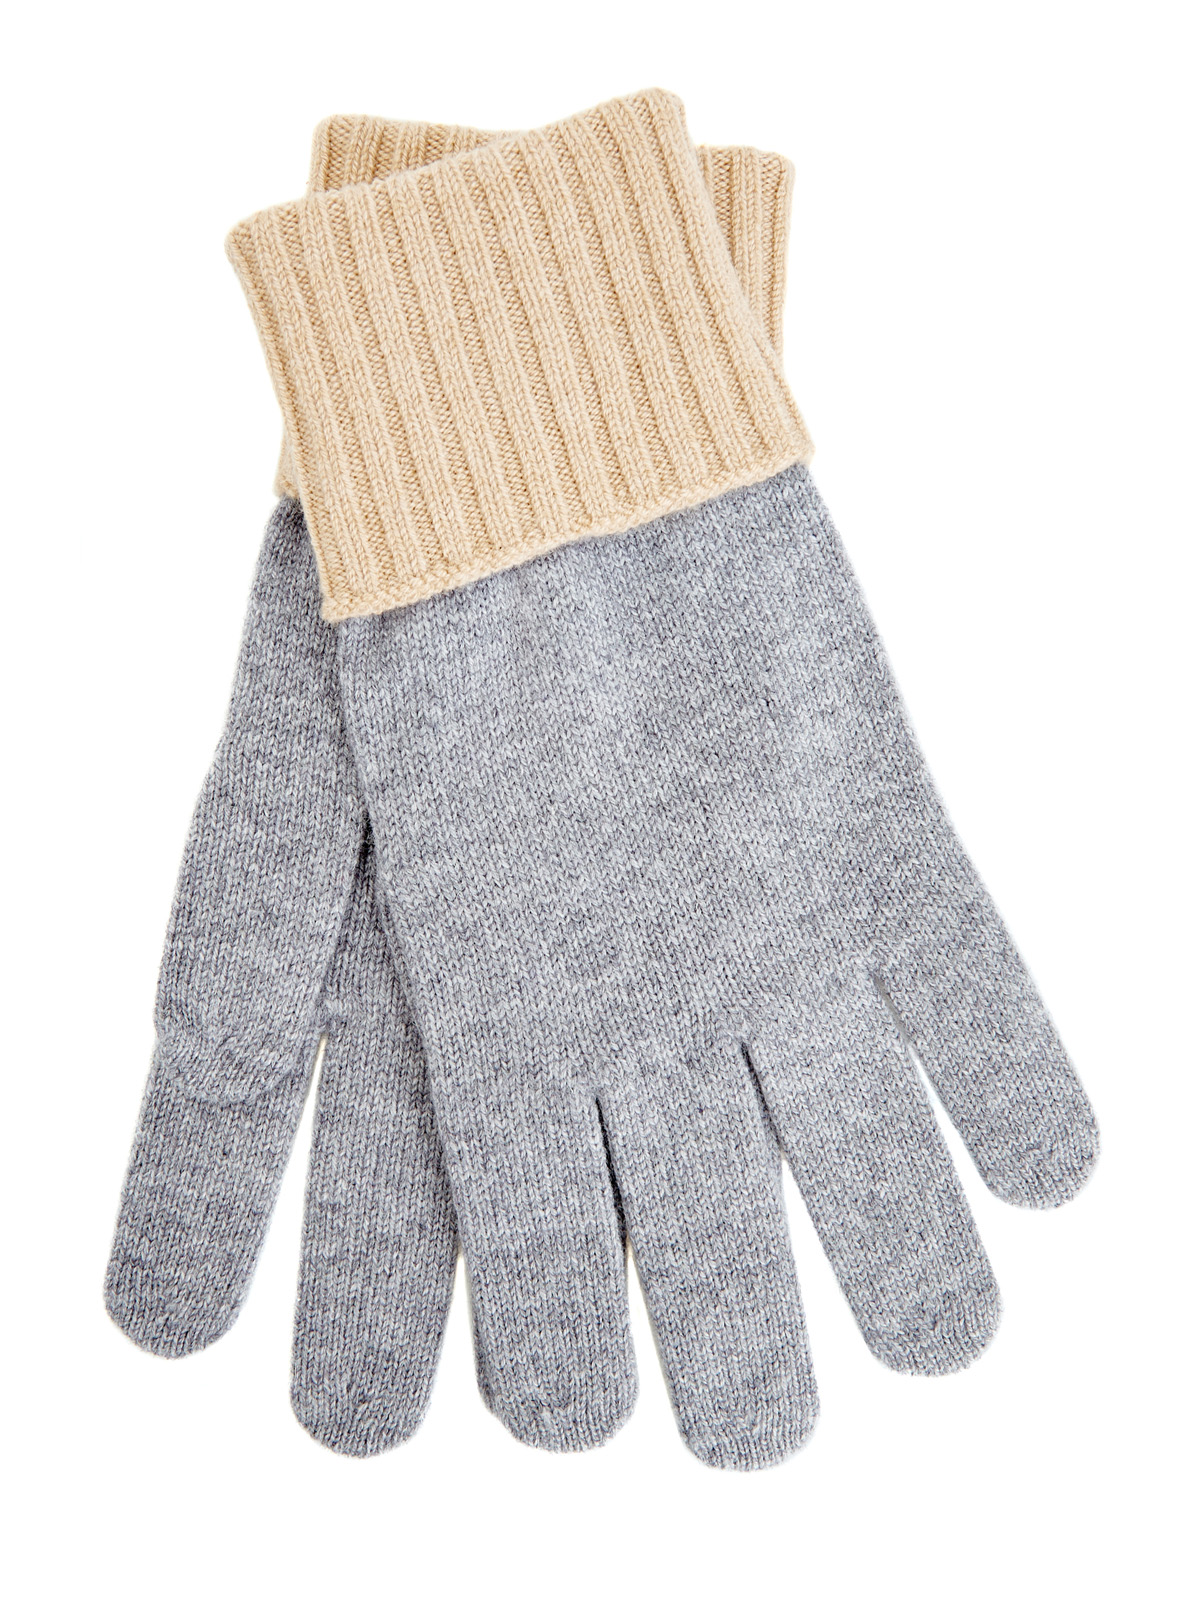 Двухцветные перчатки из мягкой кашемировой пряжи ELEVENTY, размер L;XL;2XL